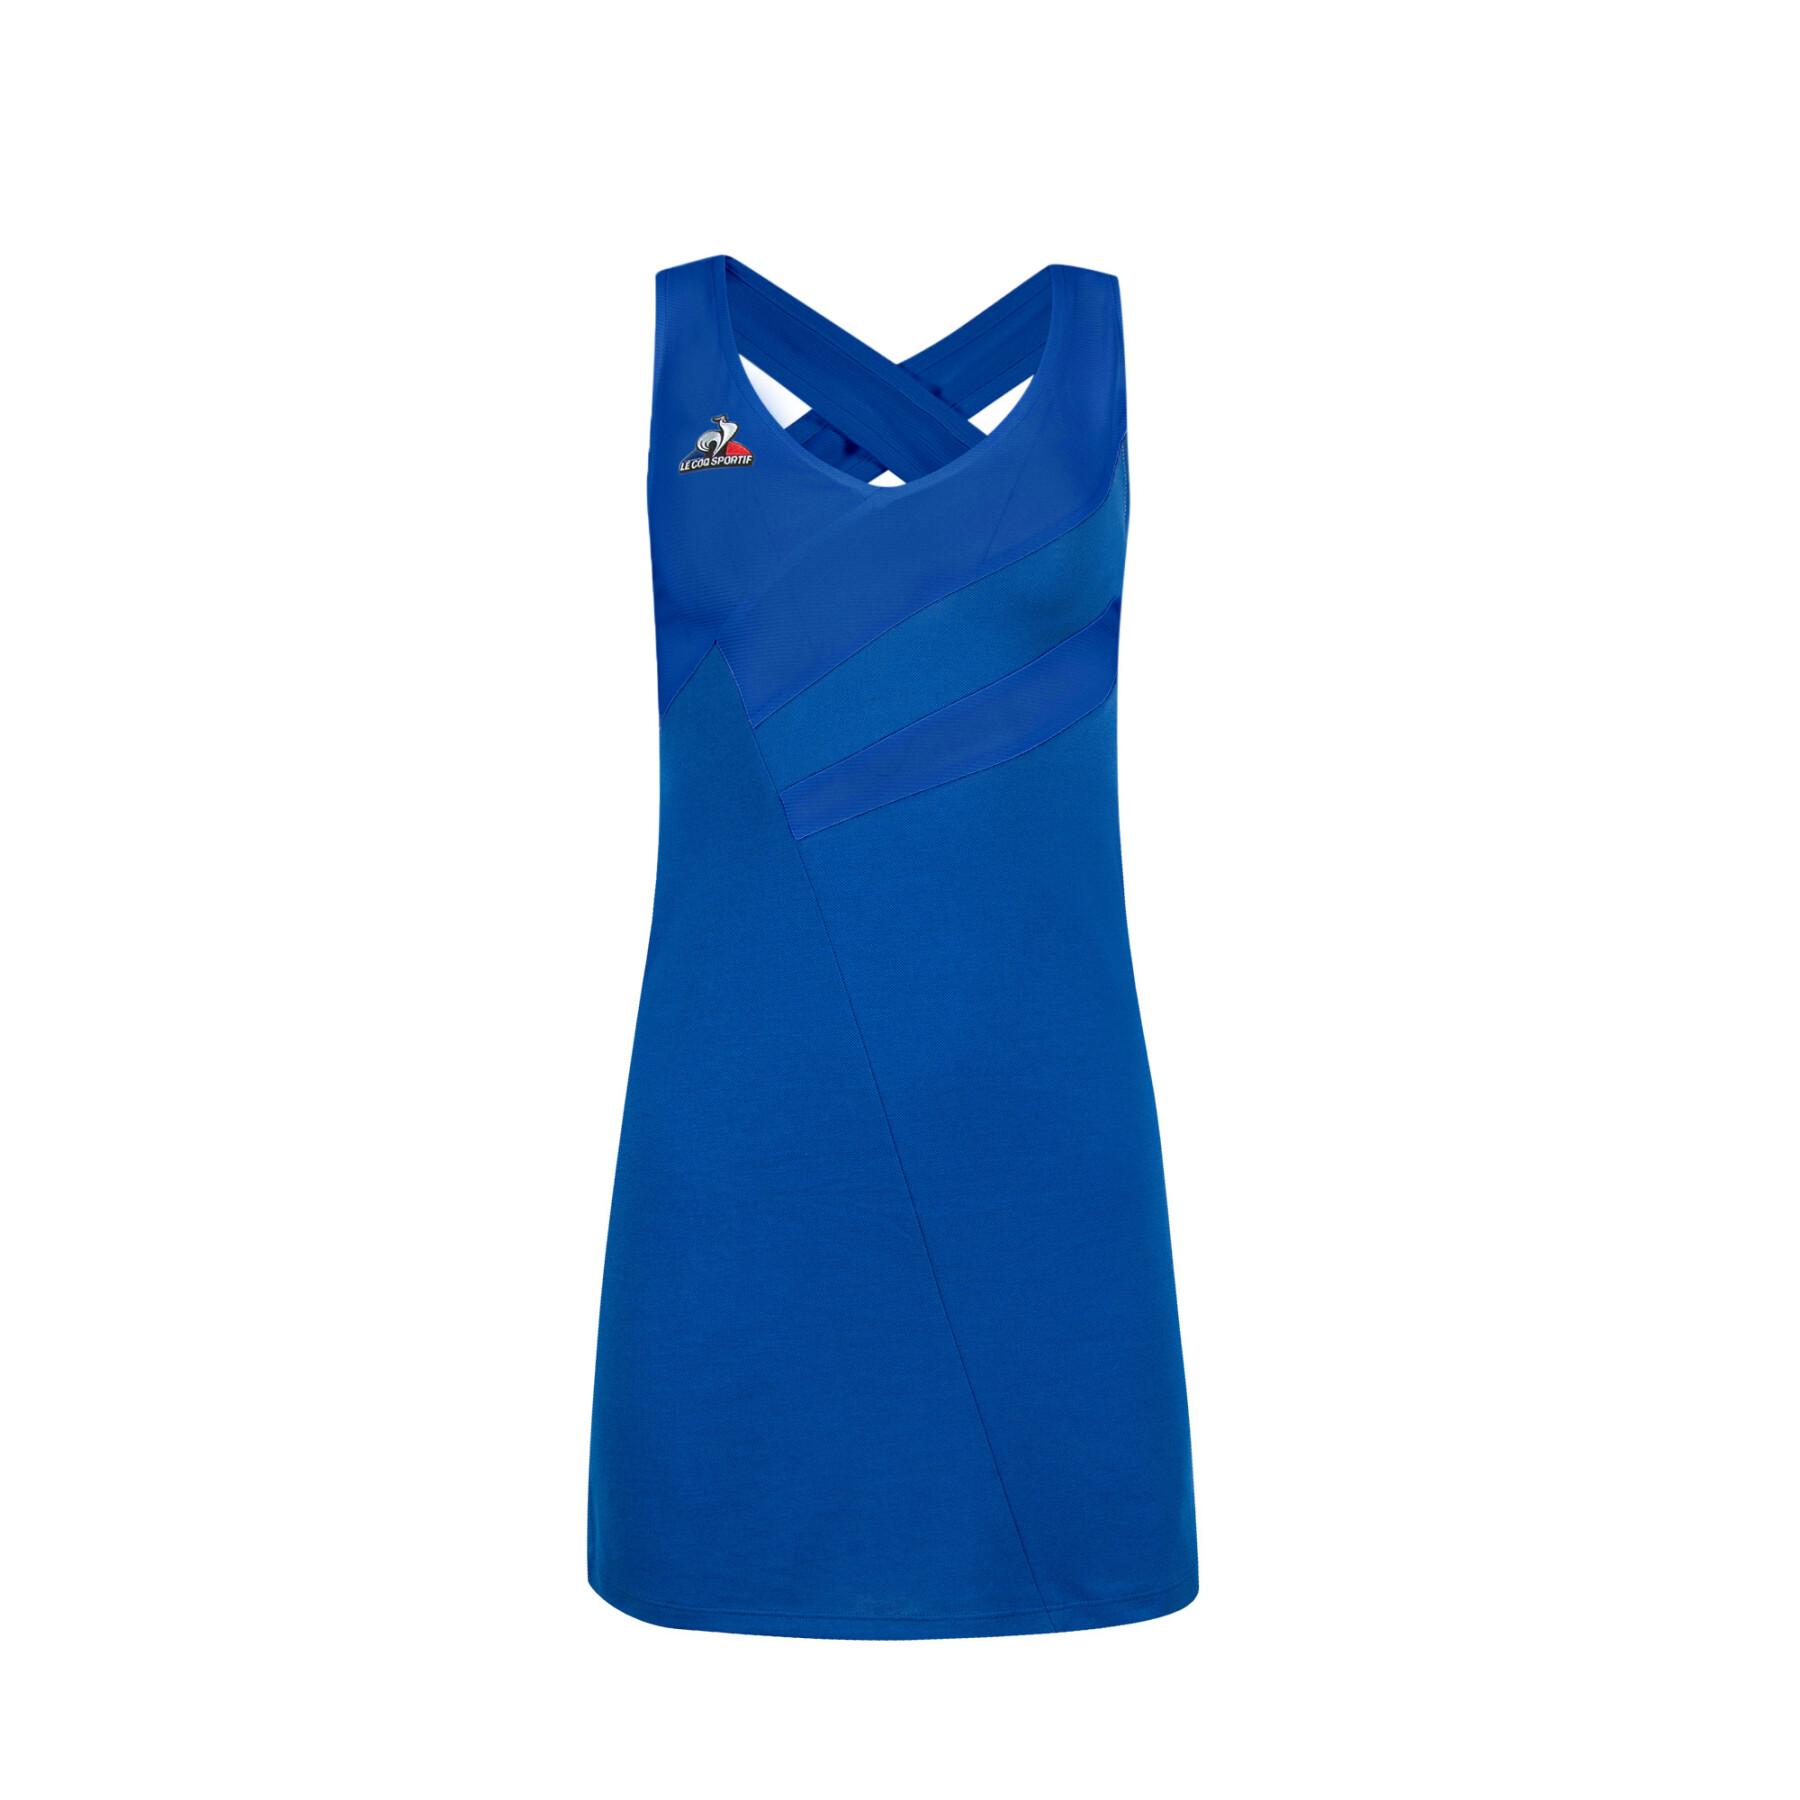 Women's dress Le Coq Sportif Tennis 21